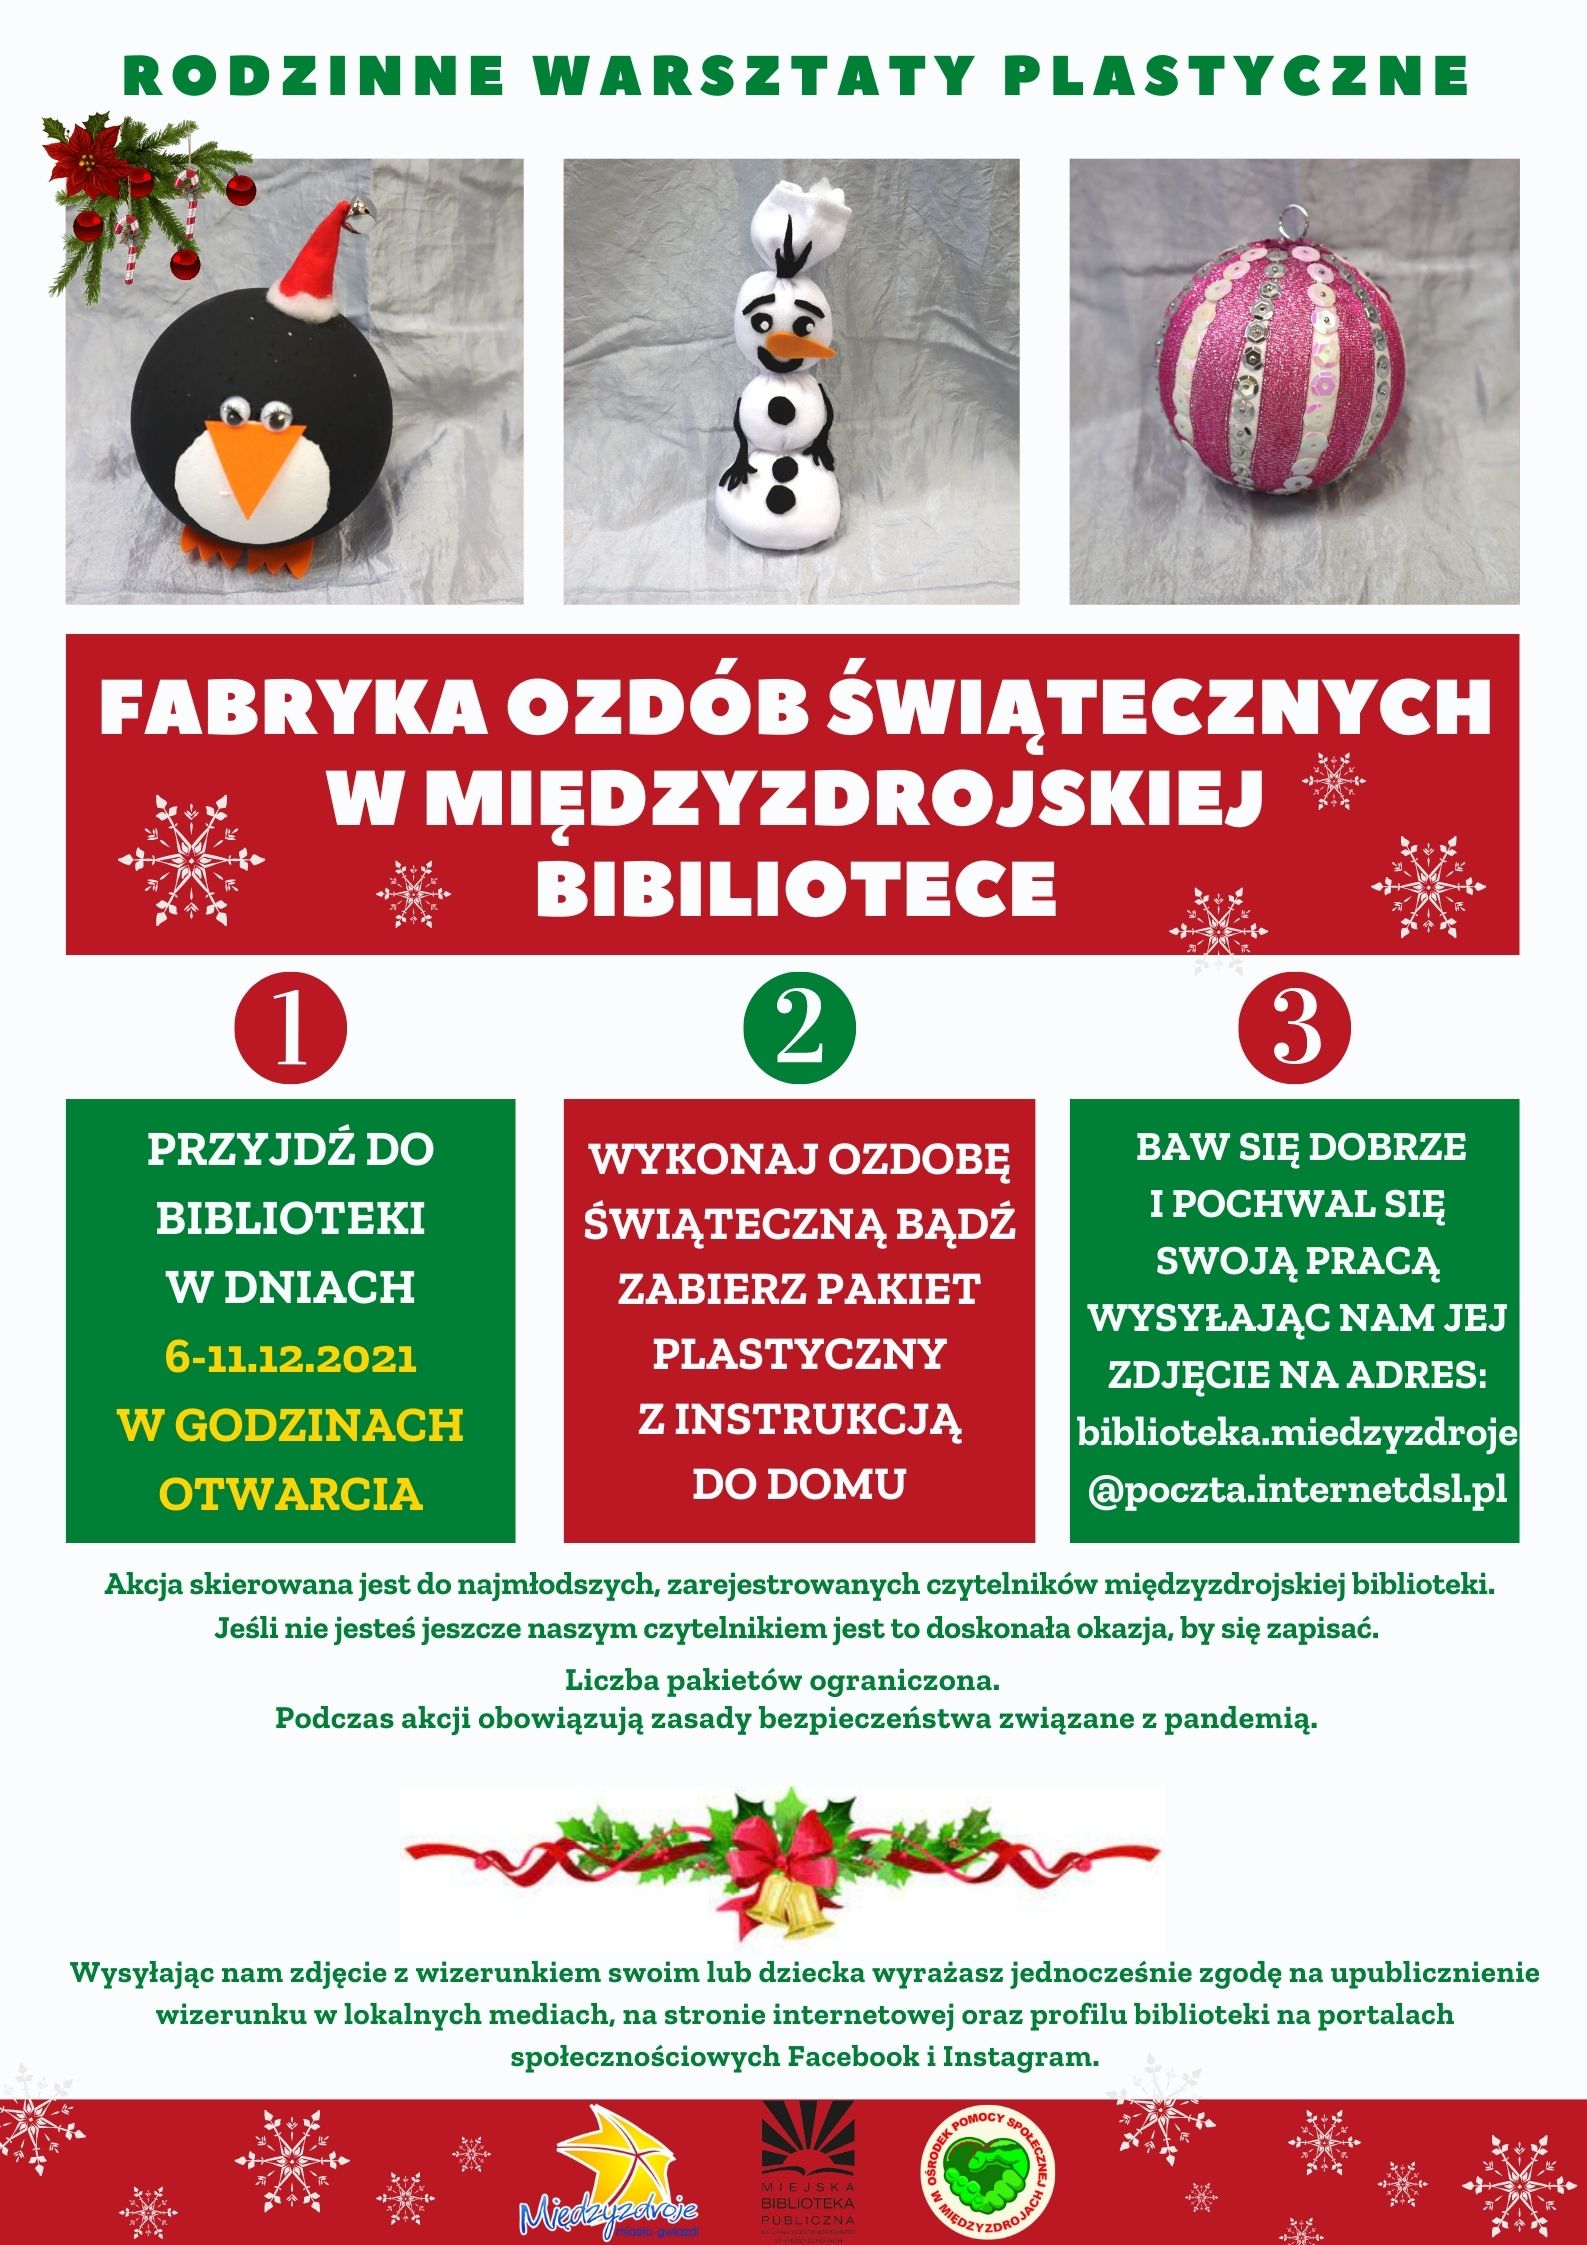 Rodzinne warsztaty plastyczne “Fabryka ozdób świątecznych”  06-11.12.2021 r. - zapowiedź